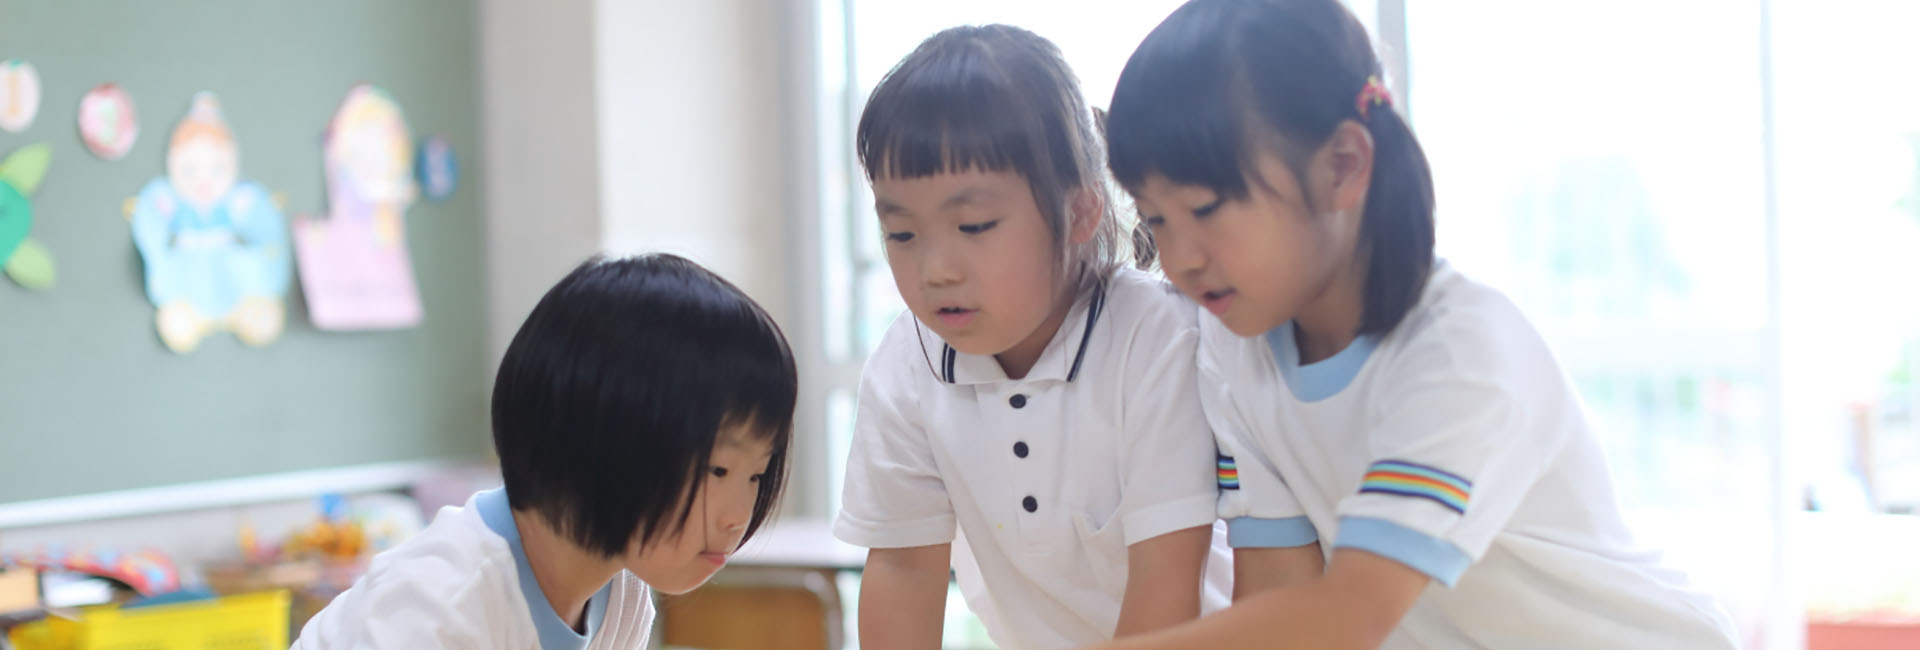 桜の聖母幼稚園 – 長崎県佐世保市の認定こども園